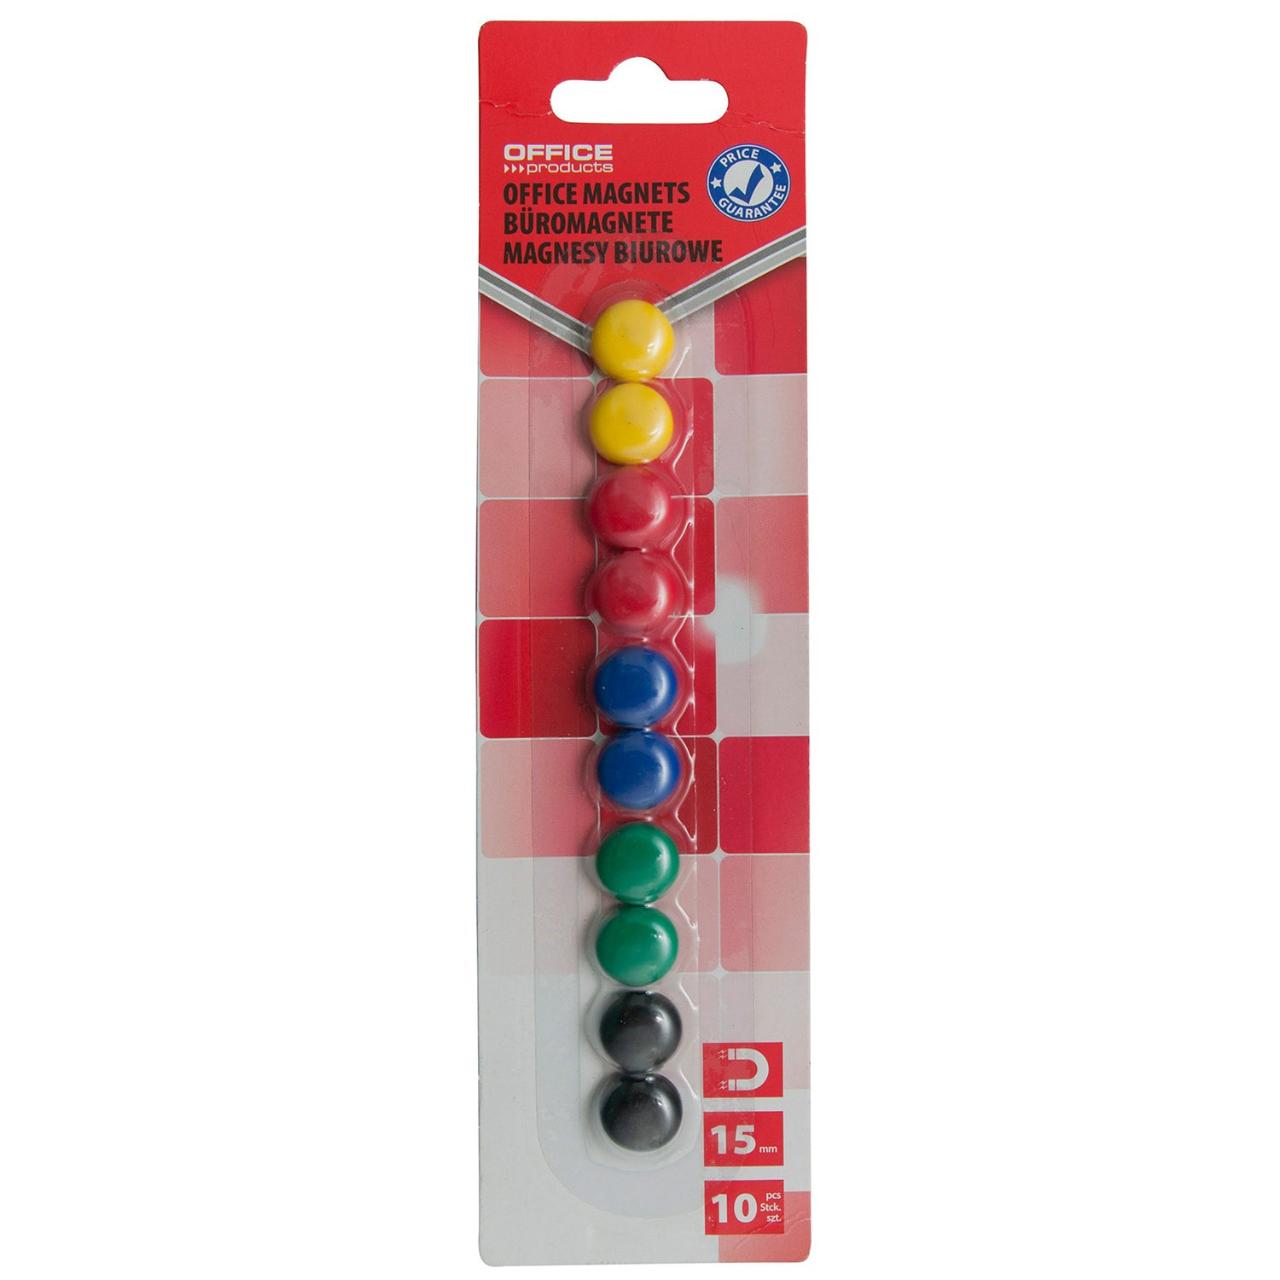 Magneti pentru table Office Products, 15 mm, 10 bucati/set, culori asortate